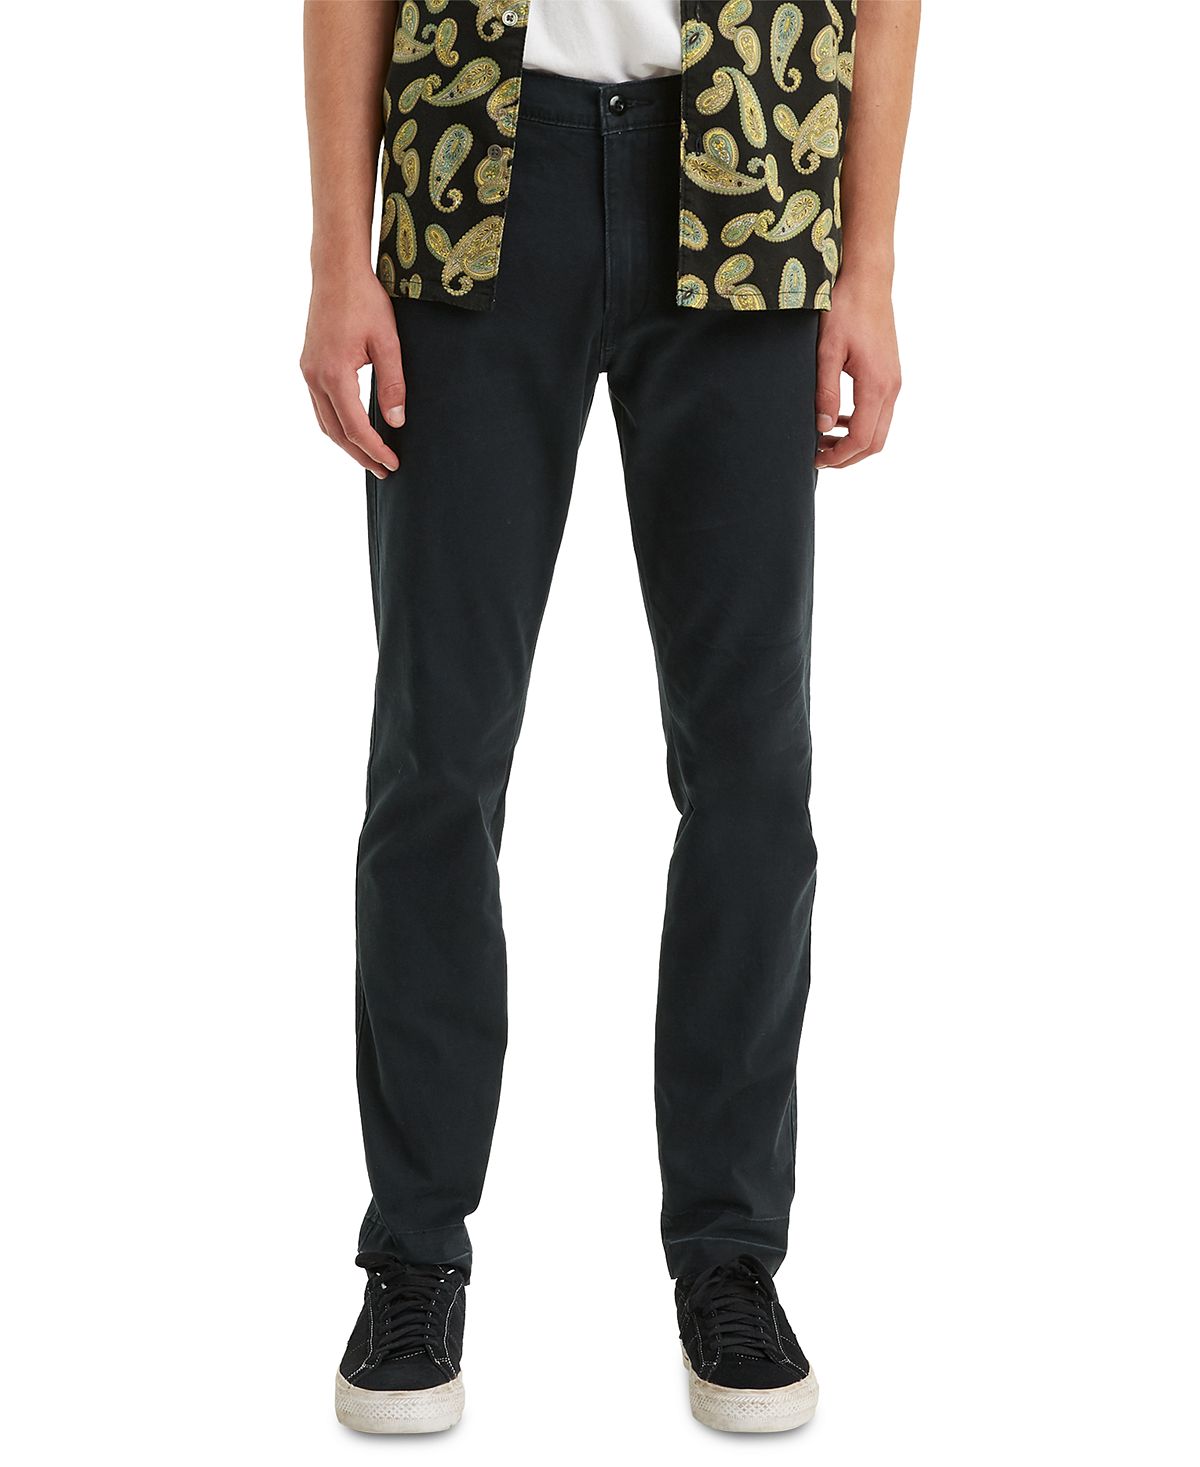 Мужские эластичные брюки xx chino standard с зауженным кроем Levi's, мульти цена и фото